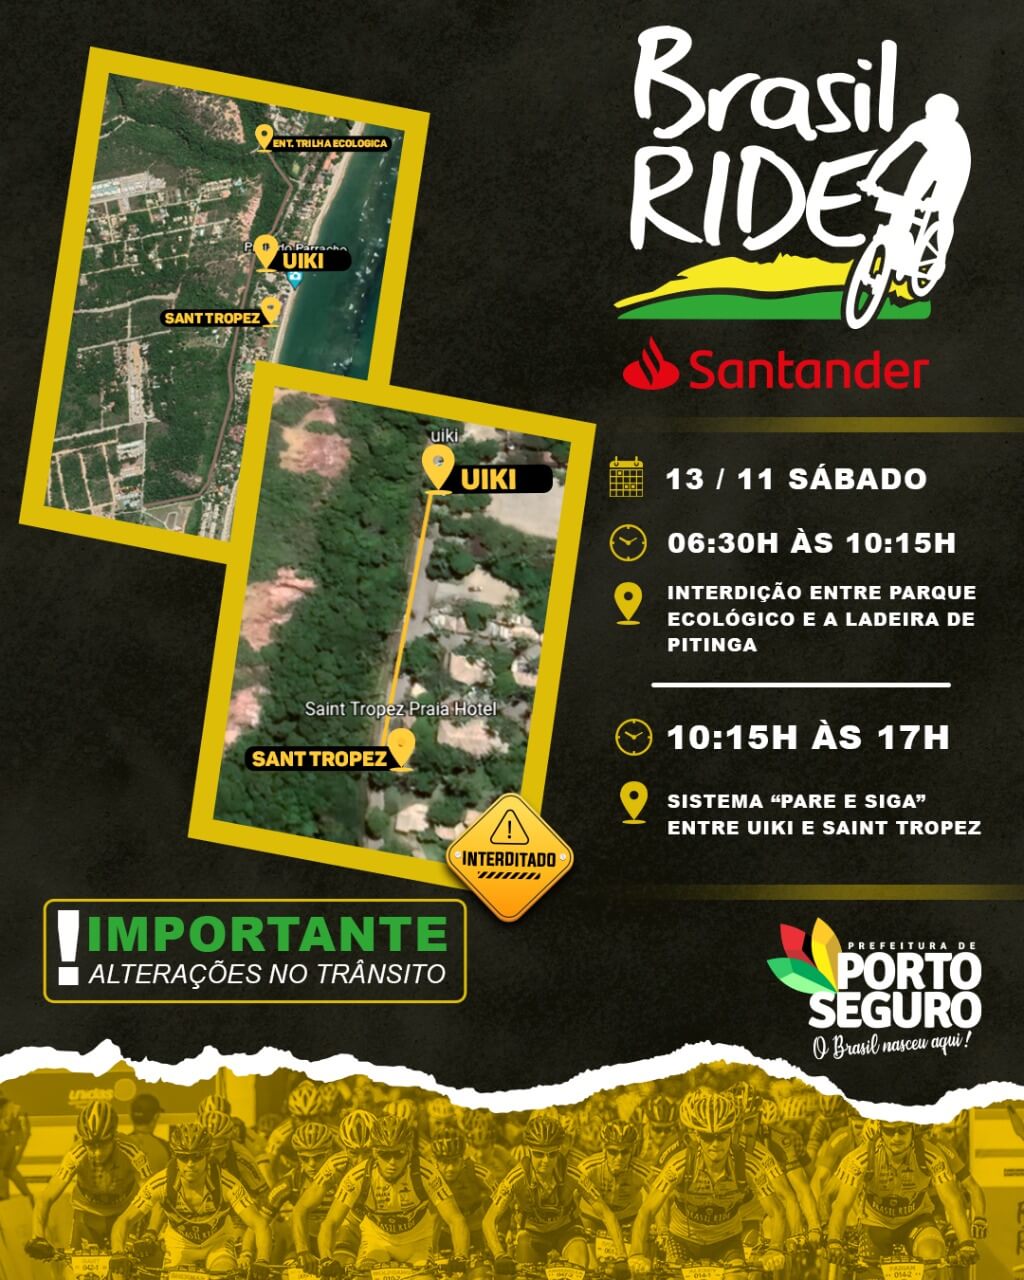 Porto Seguro: Chegou a hora! A 11ª edição da Brasil Ride começa neste sábado! 6